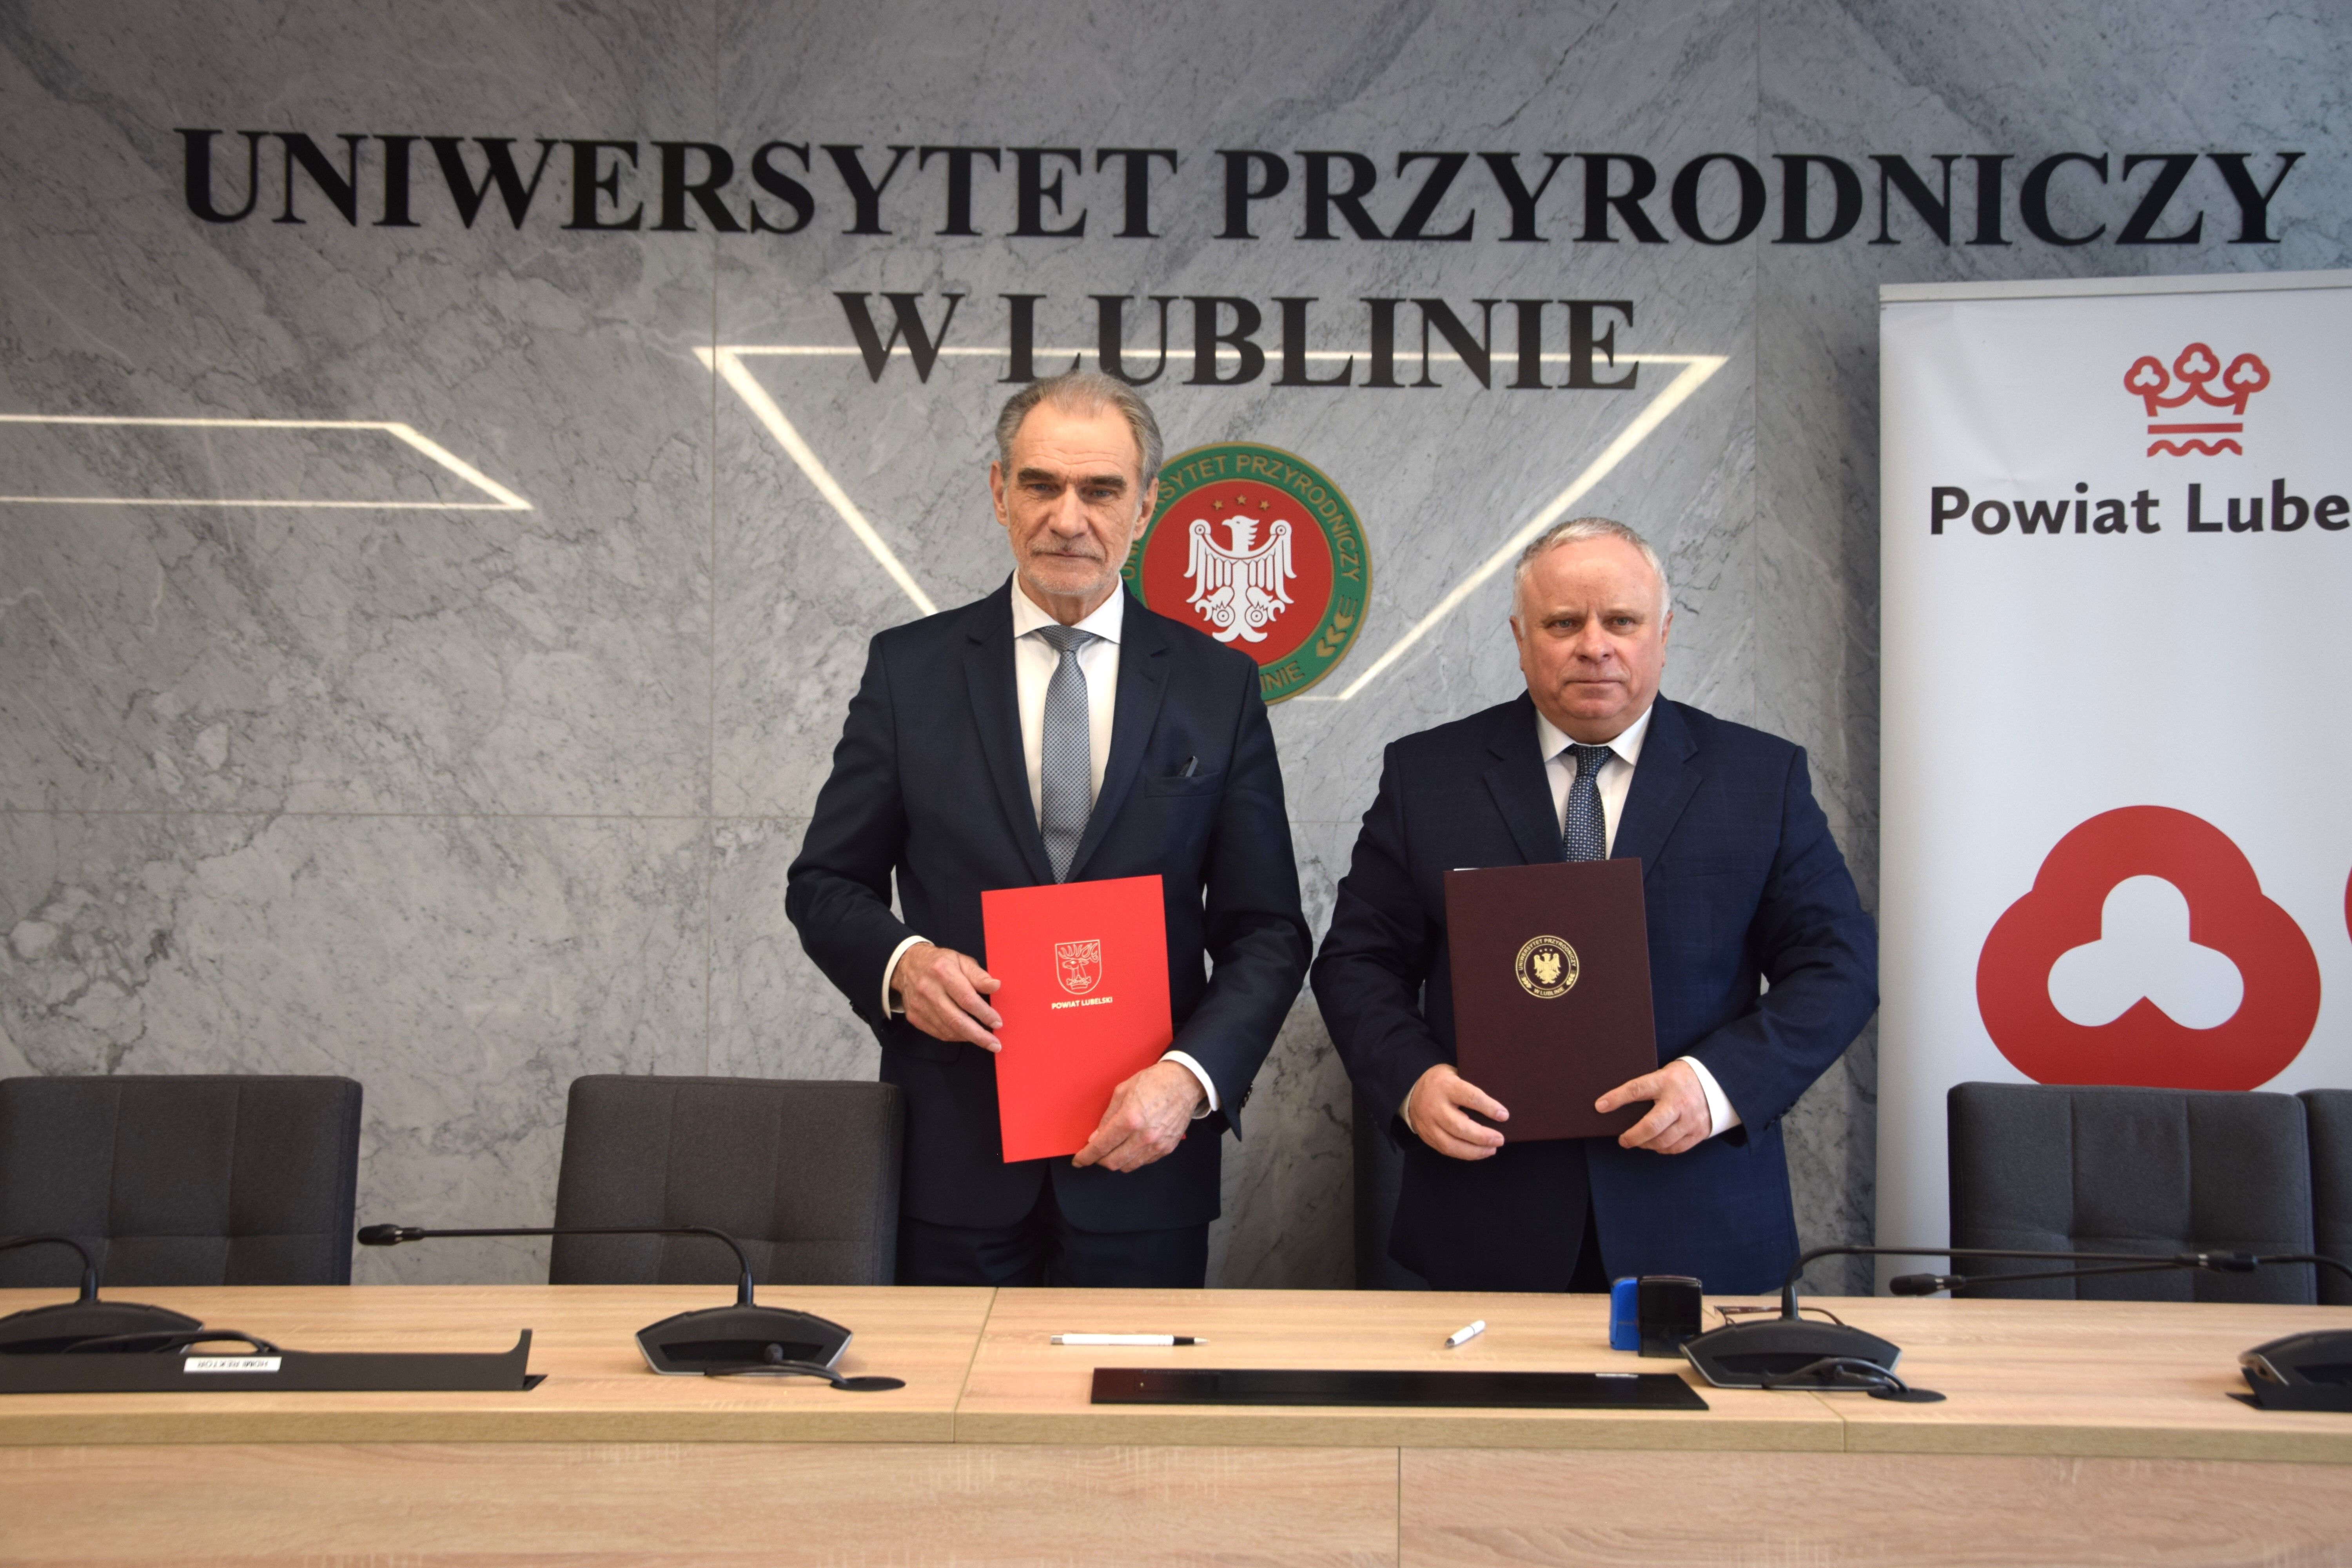 Dwaj mężczyźni ubrani w garnitury stoją w sali konferencyjnej, trzymają foldery, za nimi logo Uniwersytetu Przyrodniczego w Lublinie i herb Lublina.